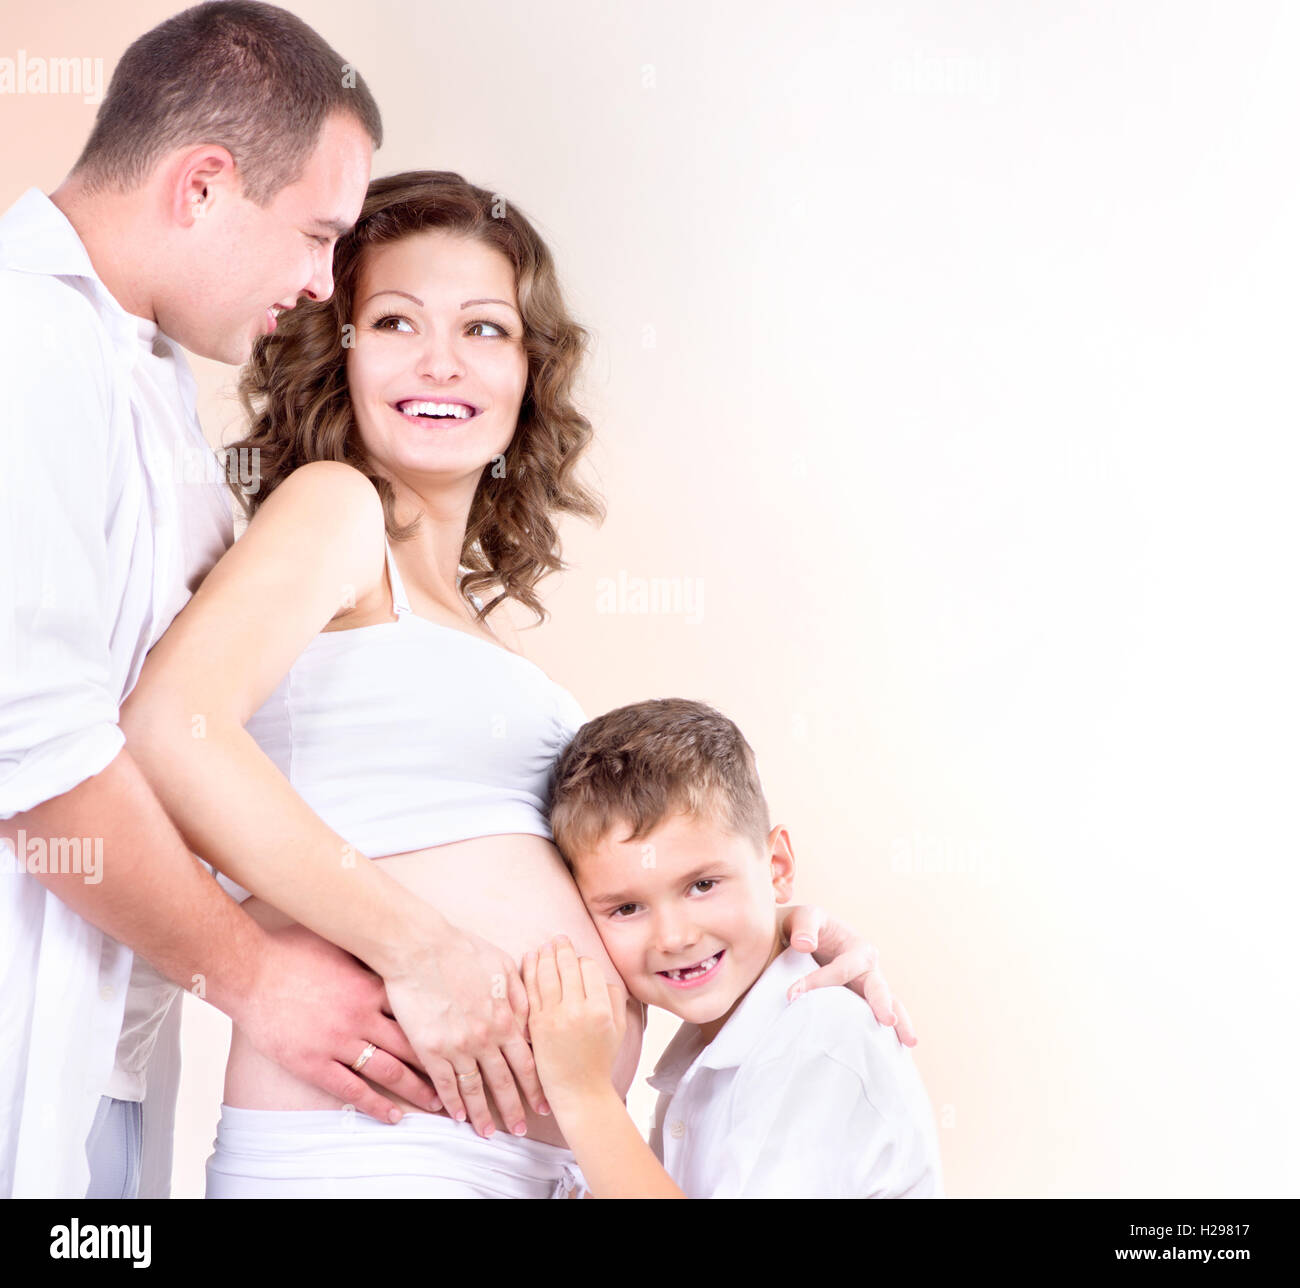 Glückliche Familie erwartet Baby. Kinder hören schwangeren Bauch Stockfoto